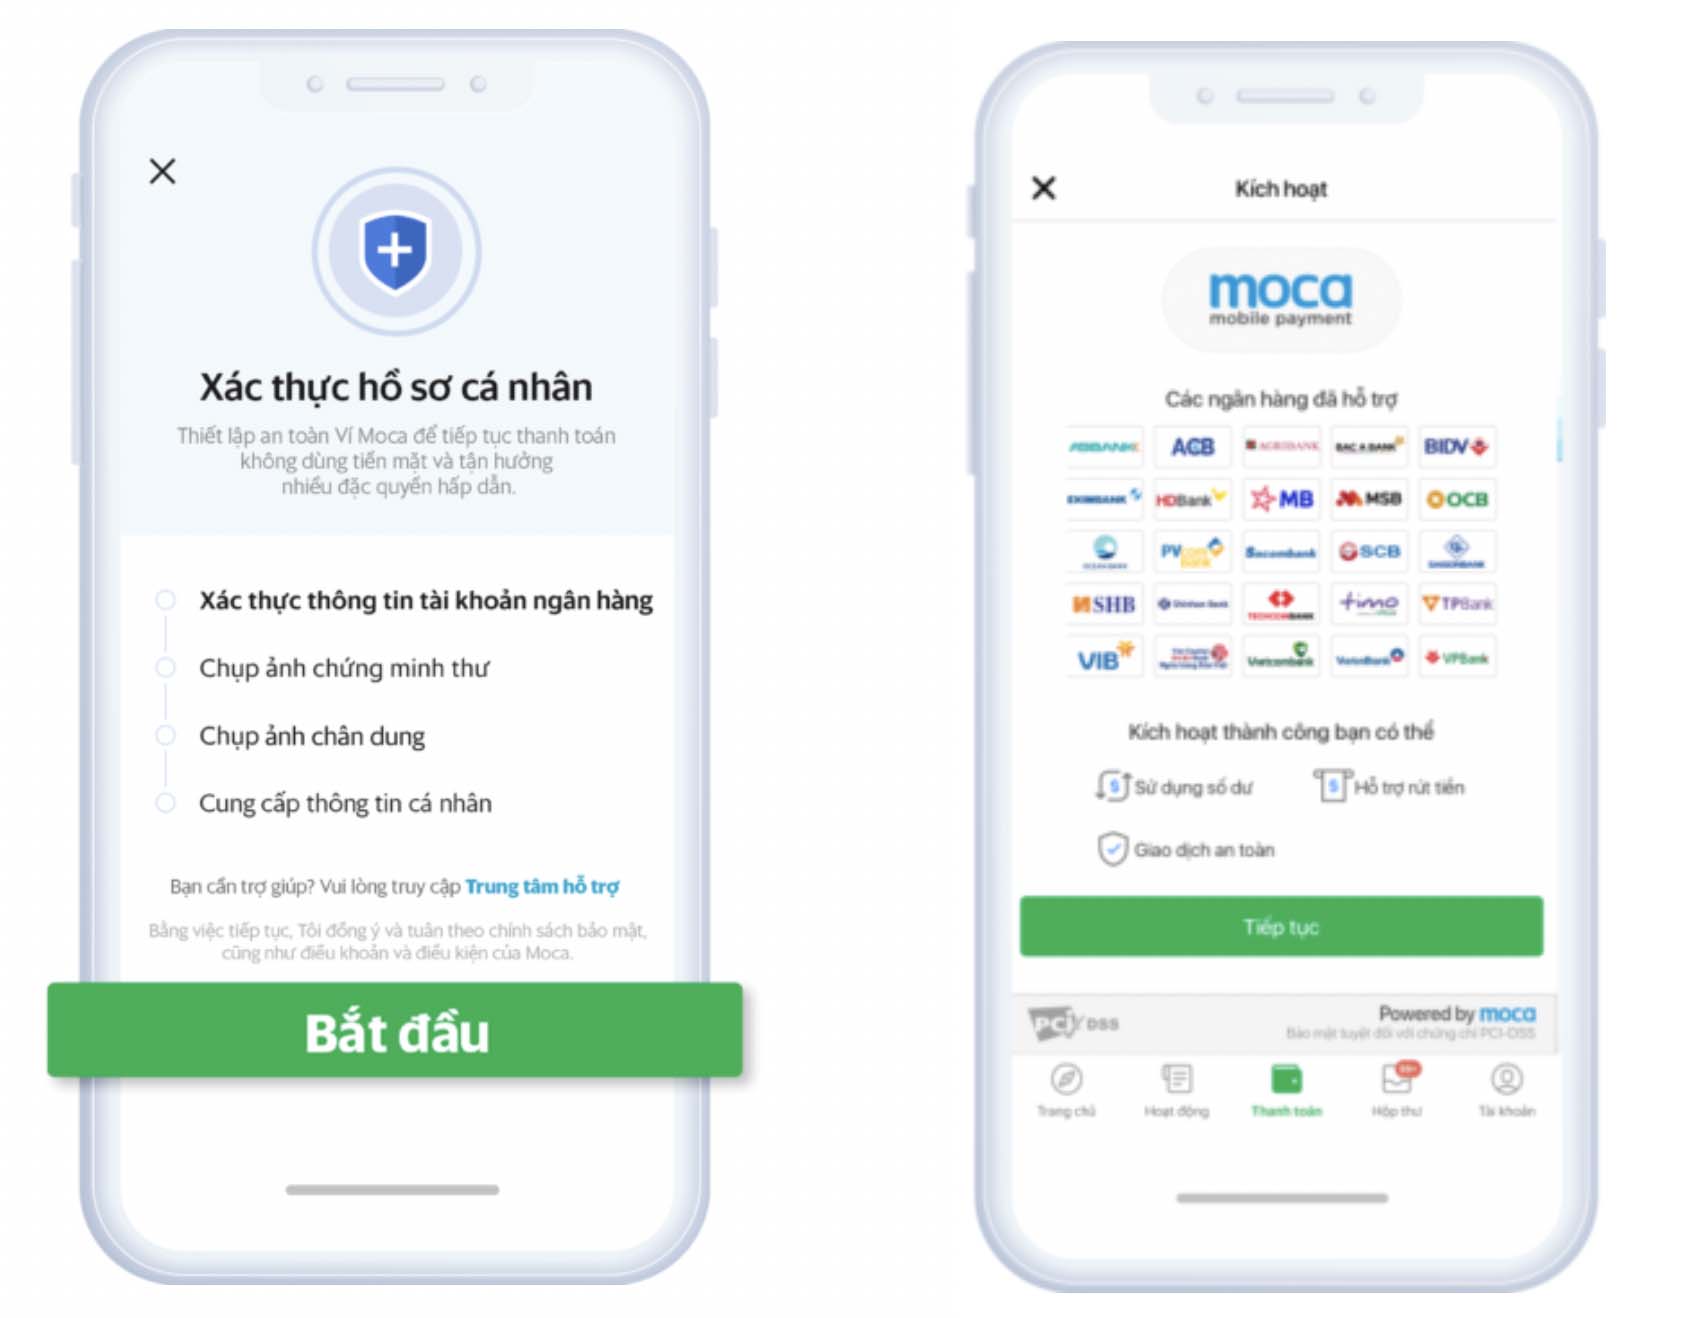 Ví điện tử Moca khuyến nghị người dùng xác thực thông tin trước ngày 07/07/2020 để tăng cường bảo mật